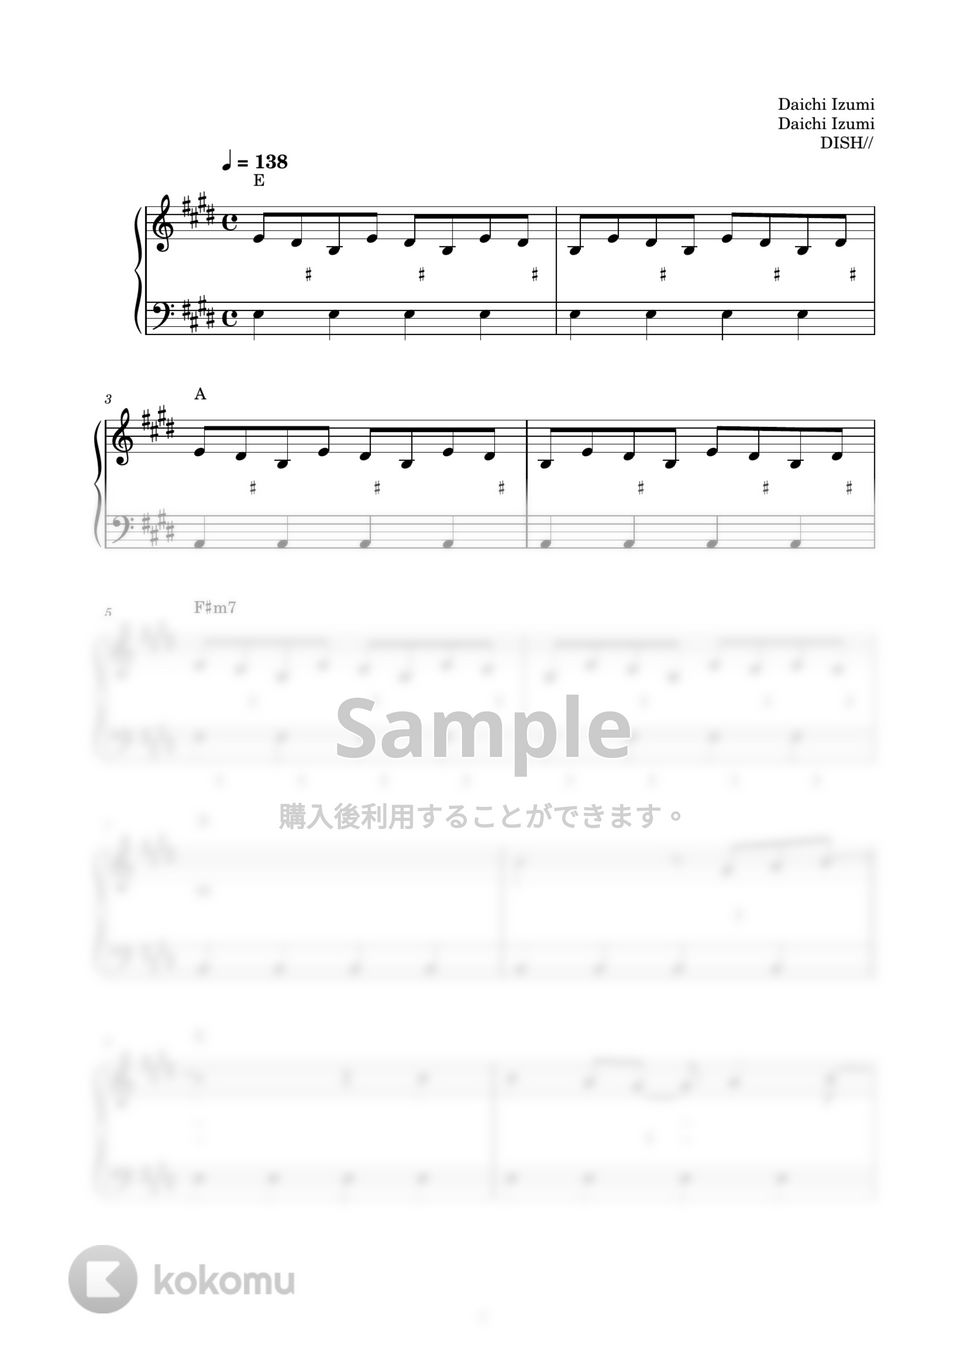 DISH// - しわくちゃな雲を抱いて (ピアノ楽譜 / かんたん両手 / 歌詞付き / ドレミ付き / 初心者向き) by piano.tokyo